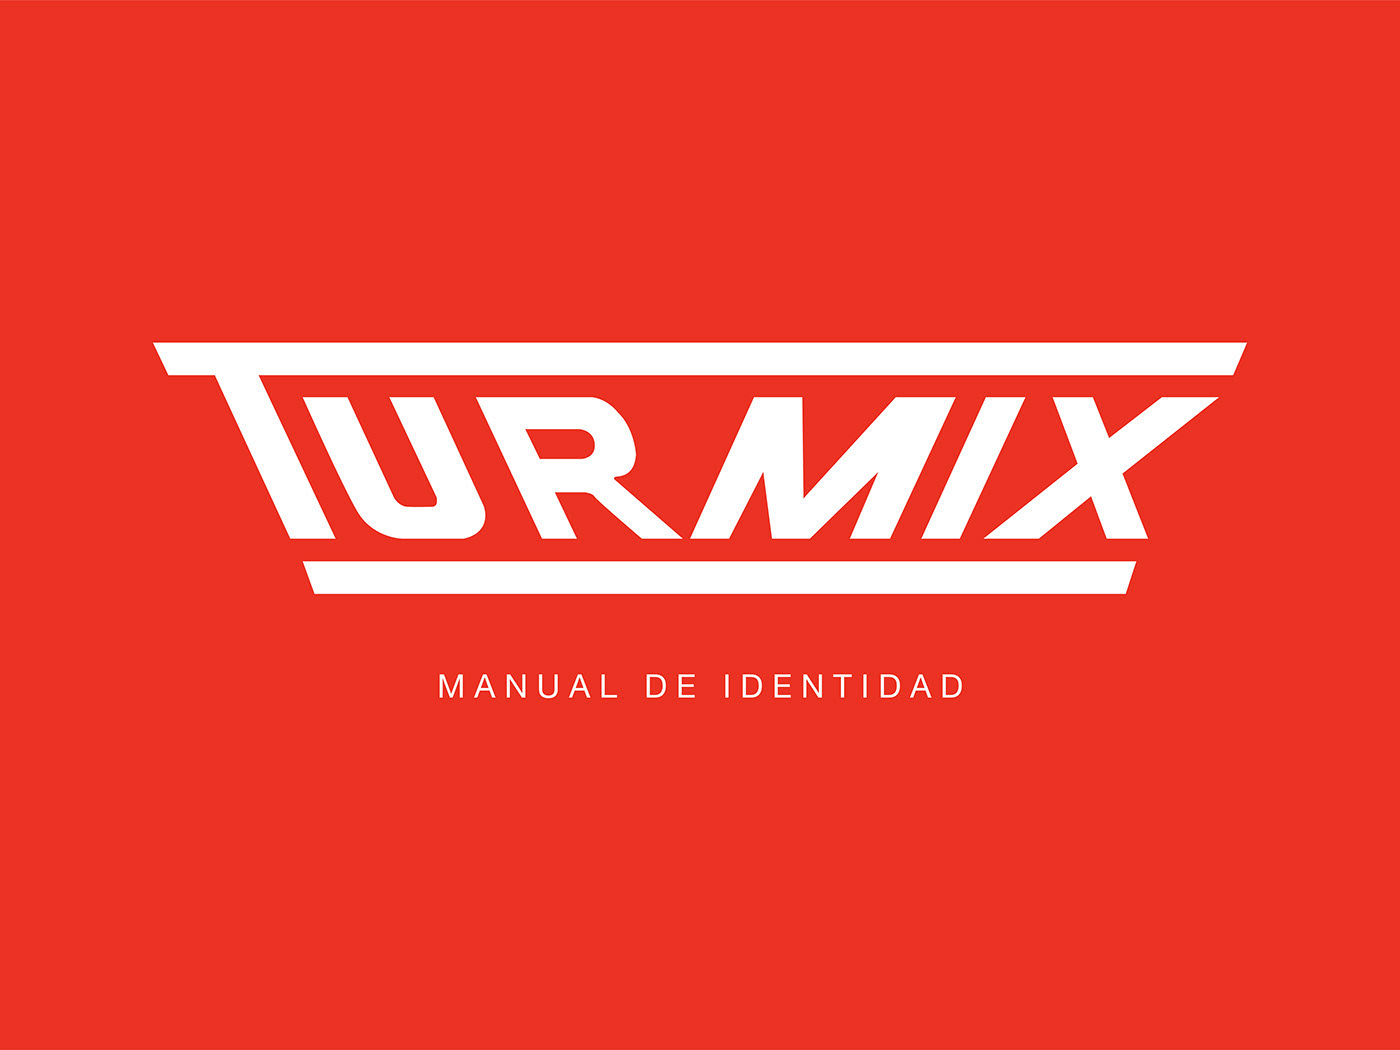 TurMix logo